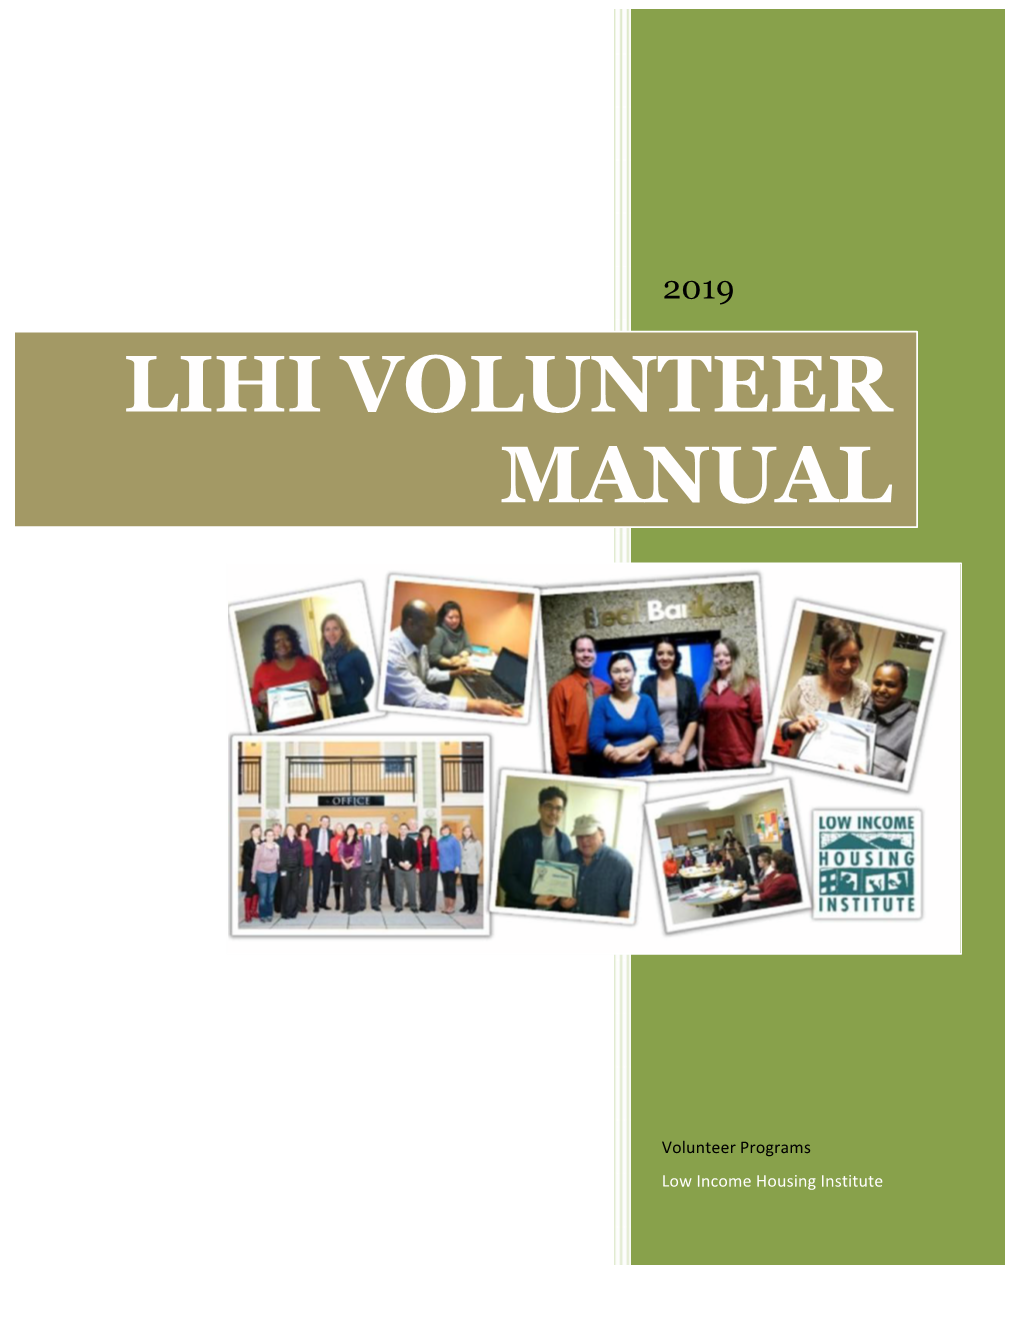 Lihi Volunteer Manual